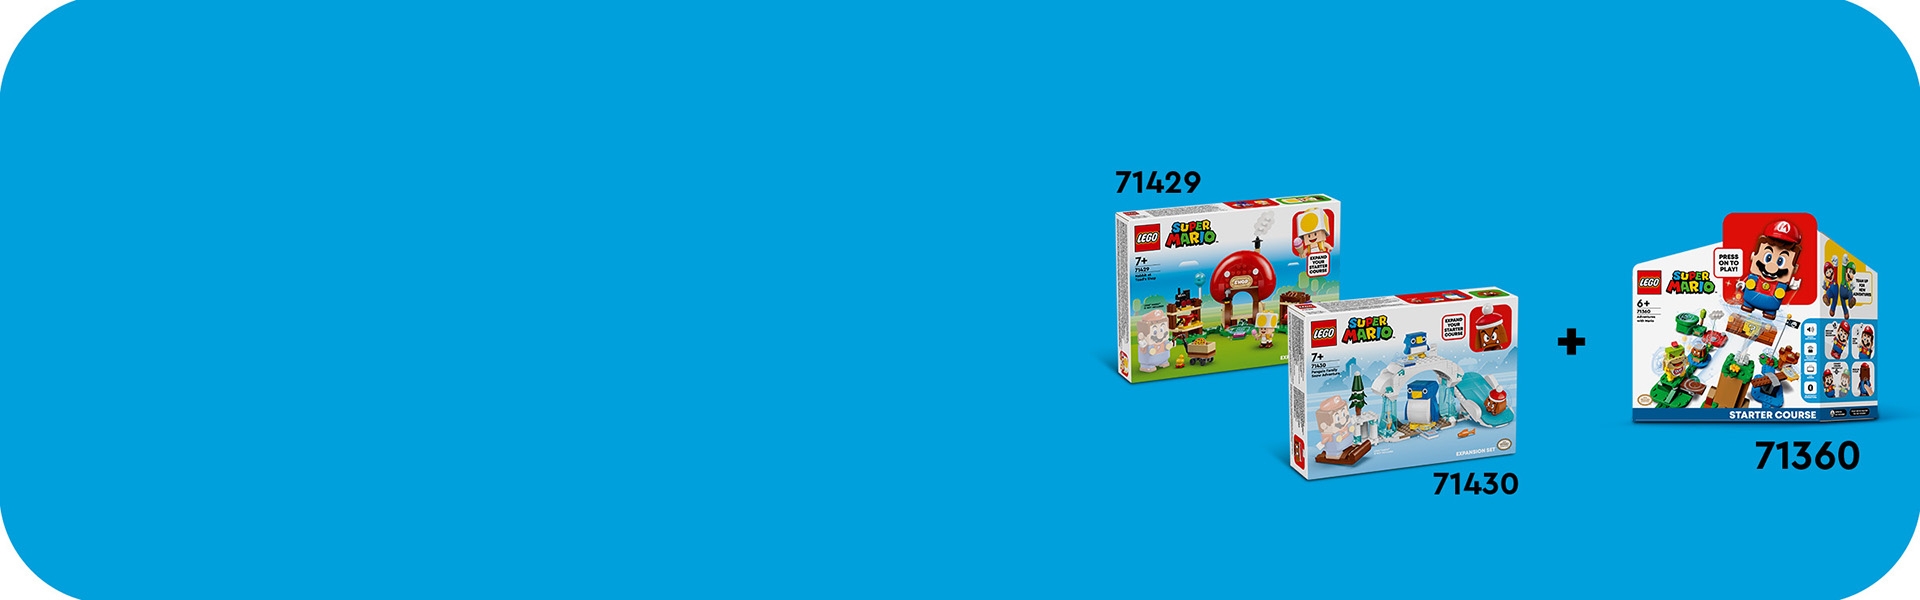 トッテン と キノピオショップ 71429 | レゴ®スーパーマリオ™ |レゴ 